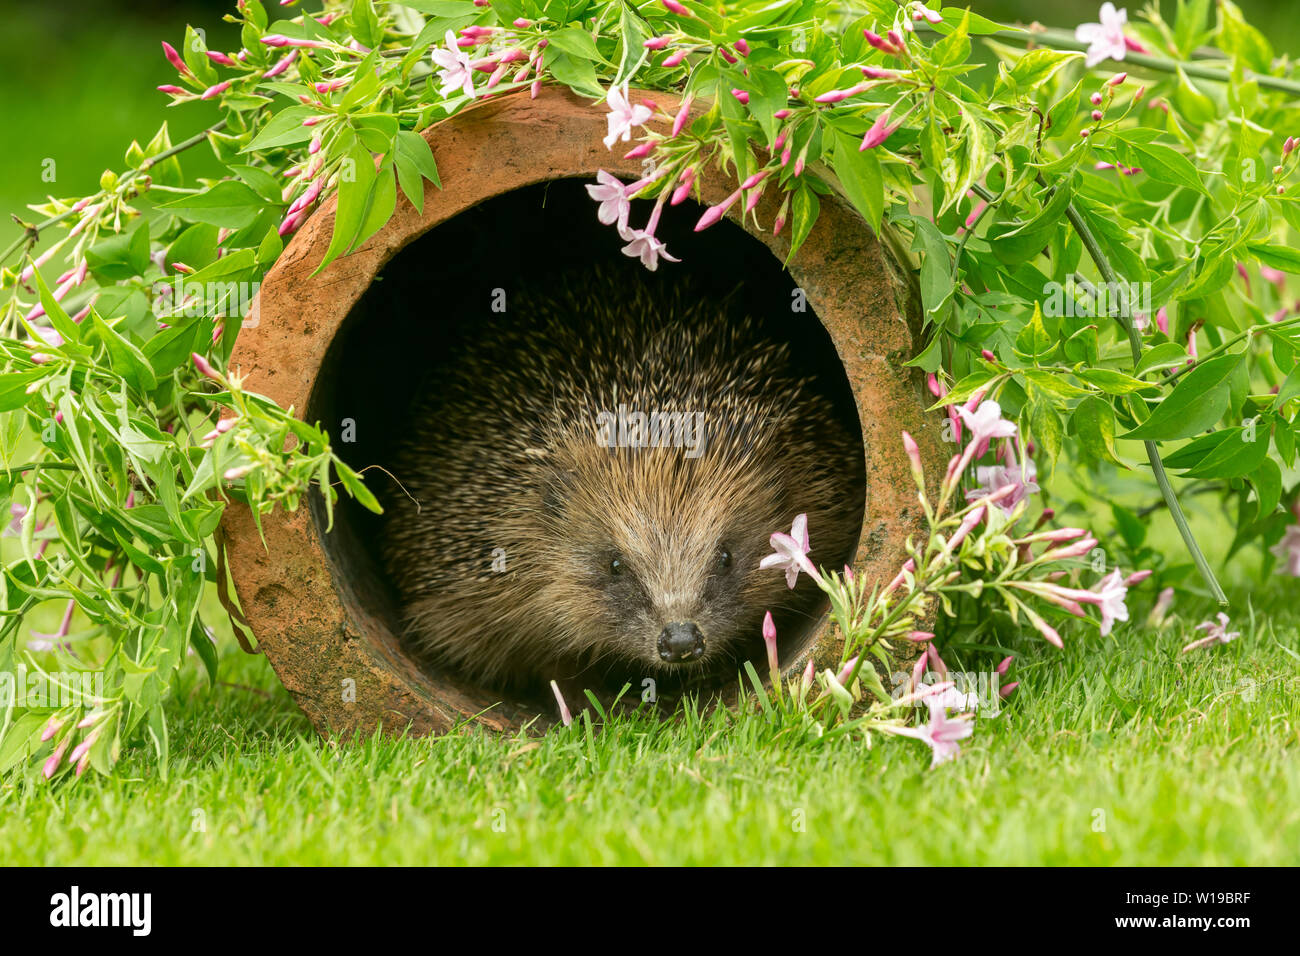 Riccio (Erinaceus europaeus) Selvatica, hedgehog nativo nel giardino naturale habitat con la fioritura di rosa fiori di gelsomino. Paesaggio. Spazio per la copia. Foto Stock